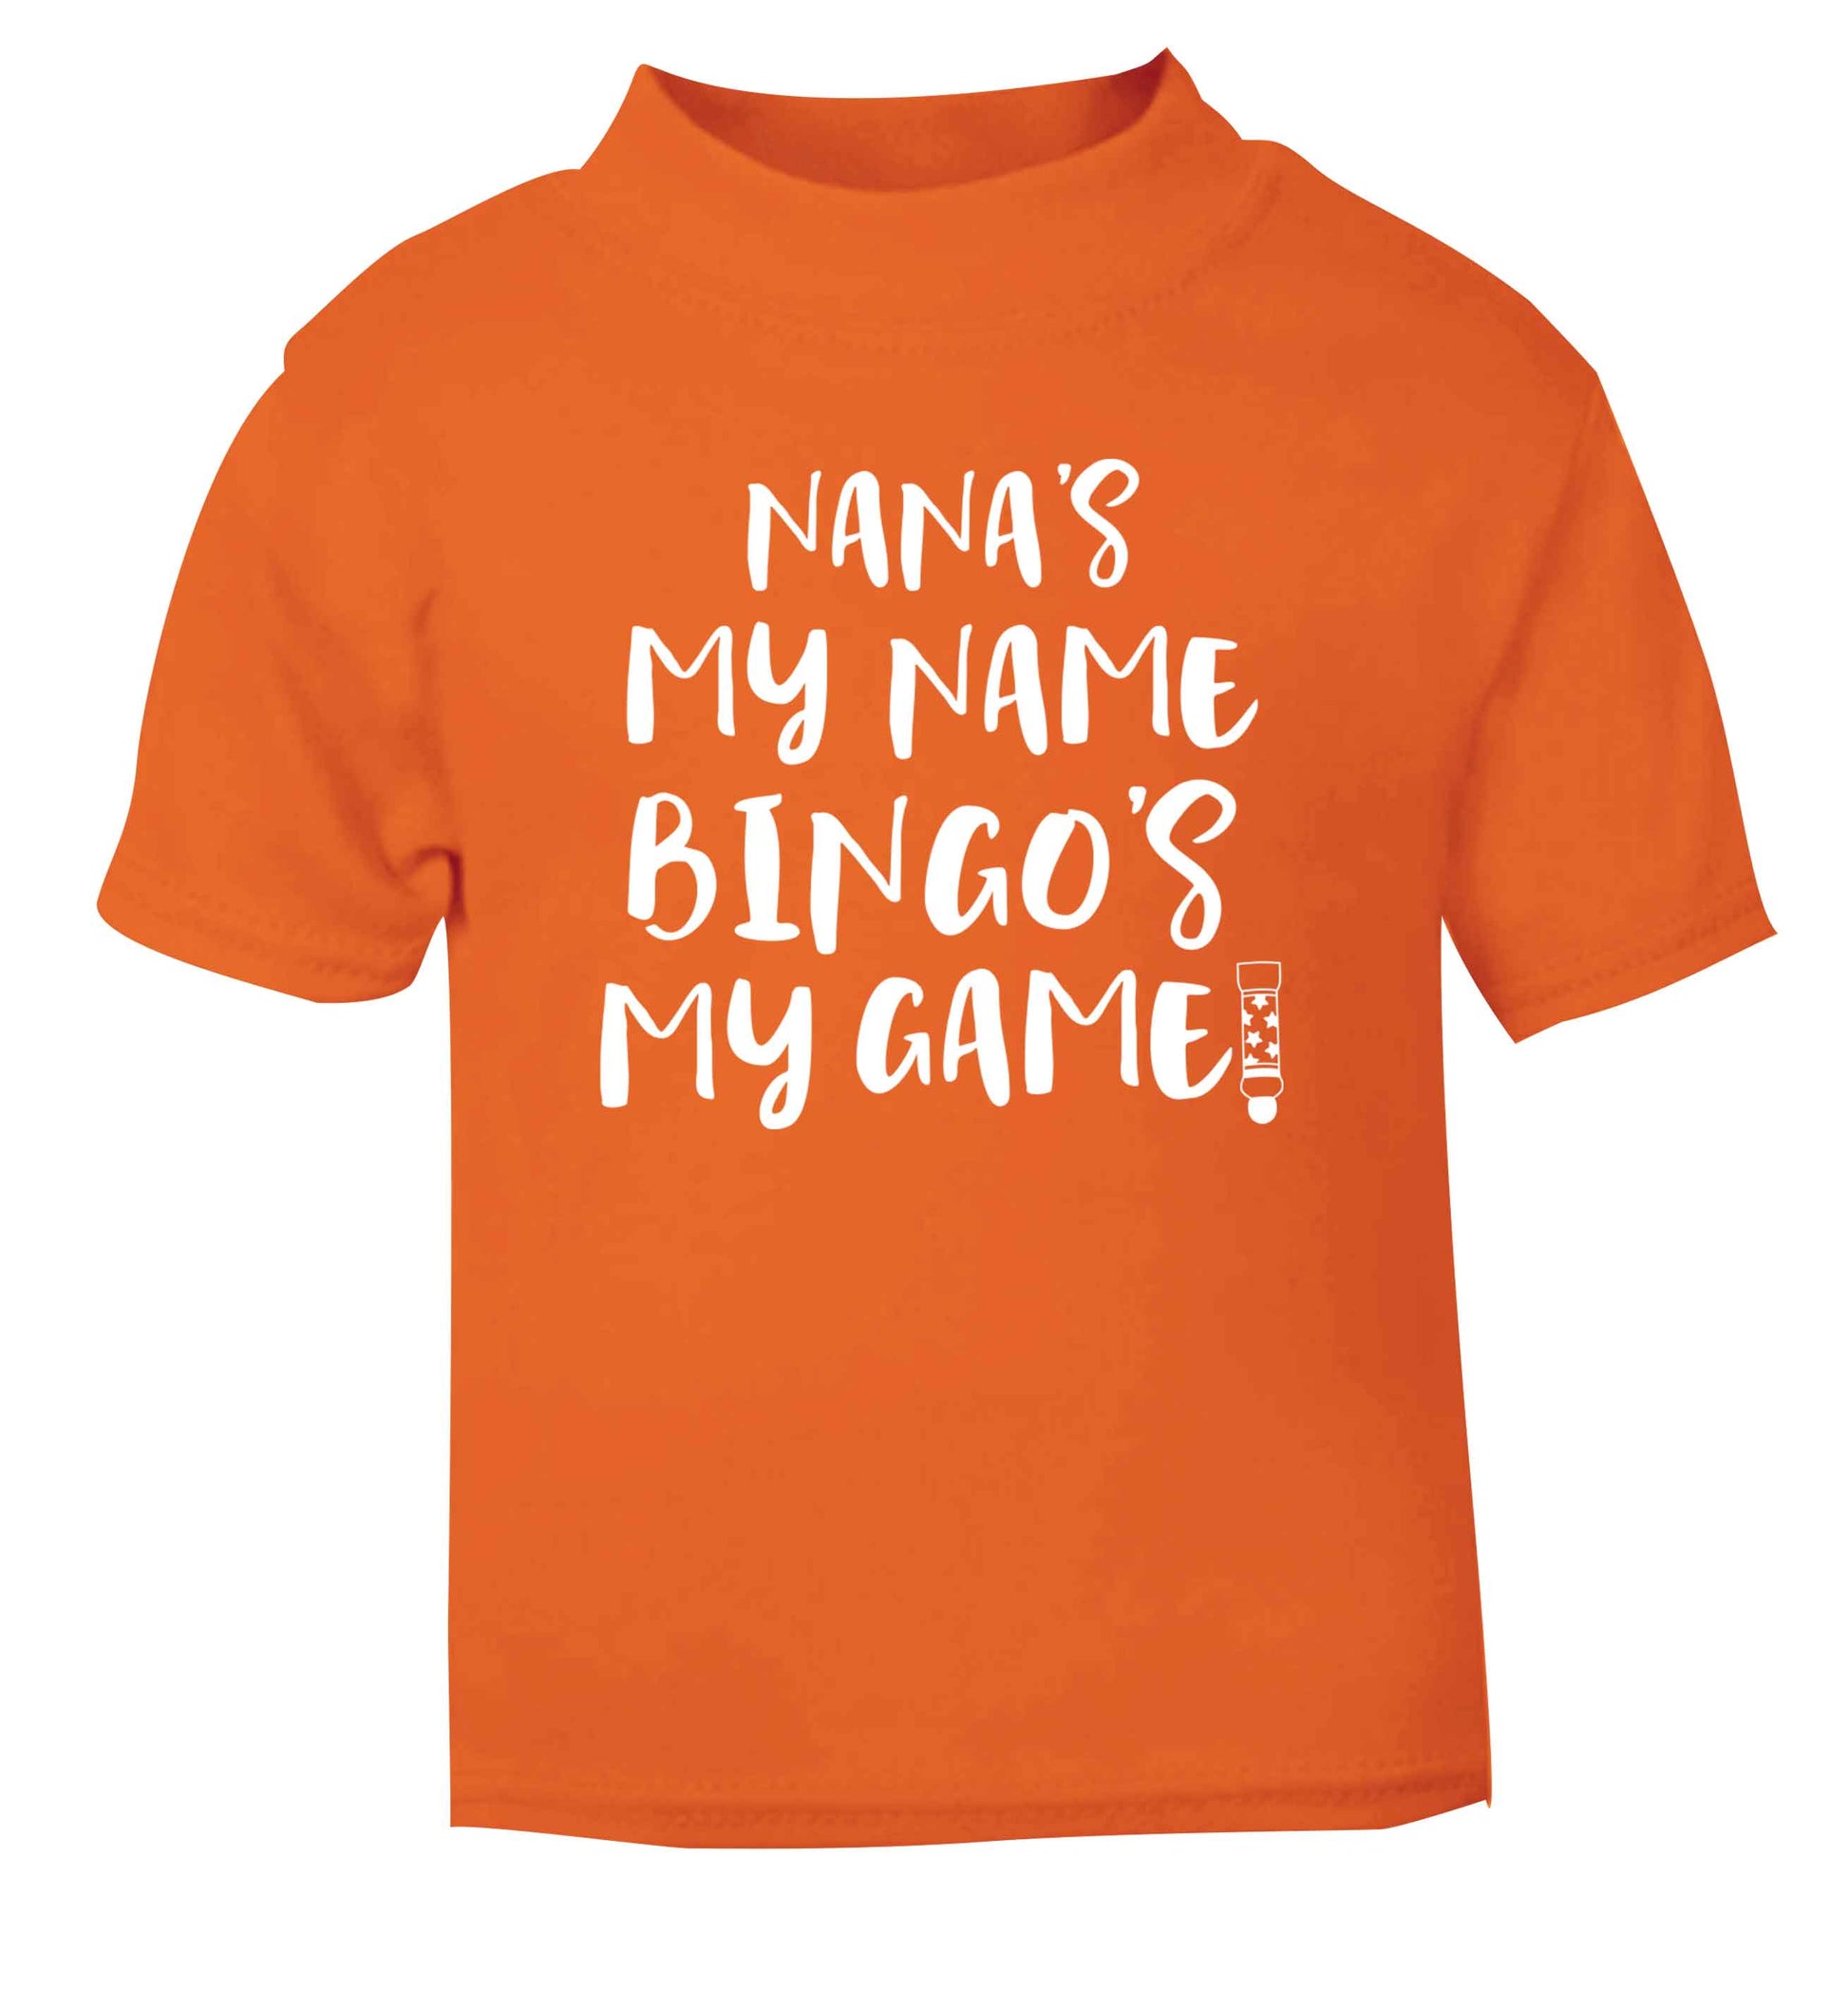 Nana's my name bingo's my game! orange Baby Toddler Tshirt 2 Years